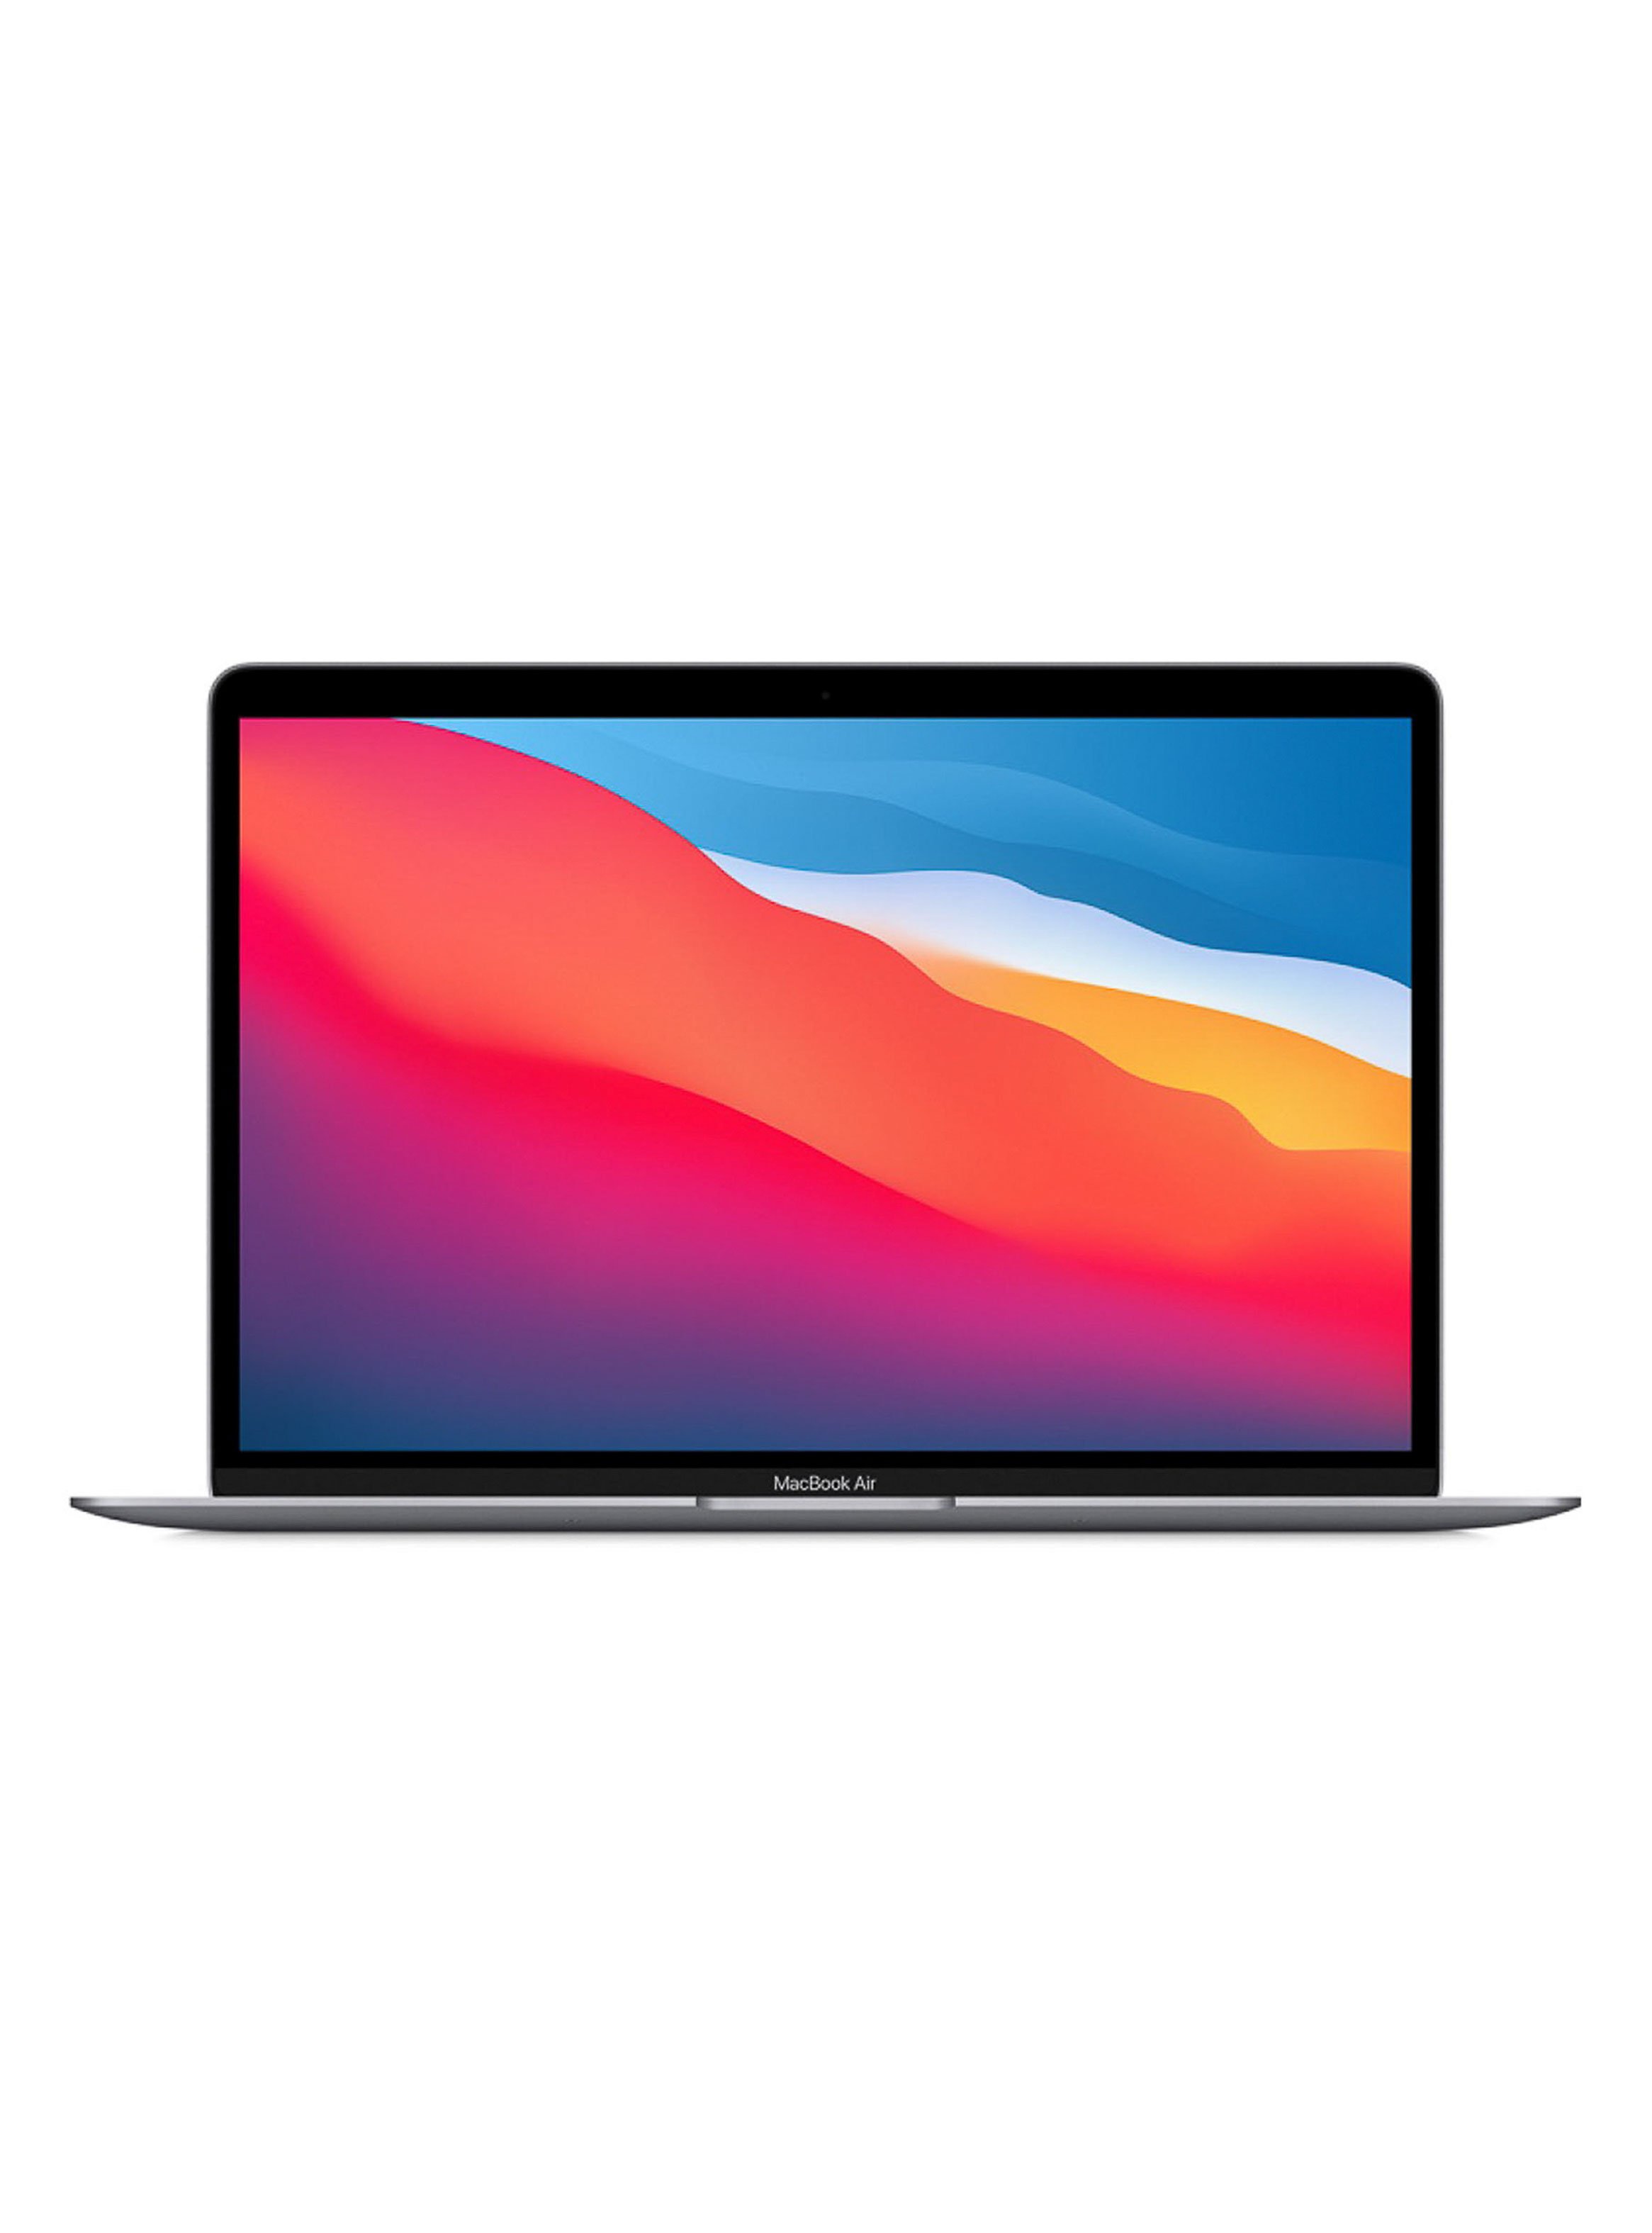 MacBook Air M1 8GB RAM 256GB SSD 13.3" Space Grey MGN63BE/A Teclado Latino + 365 Personal Suscripción 12 Meses Microsoft Office